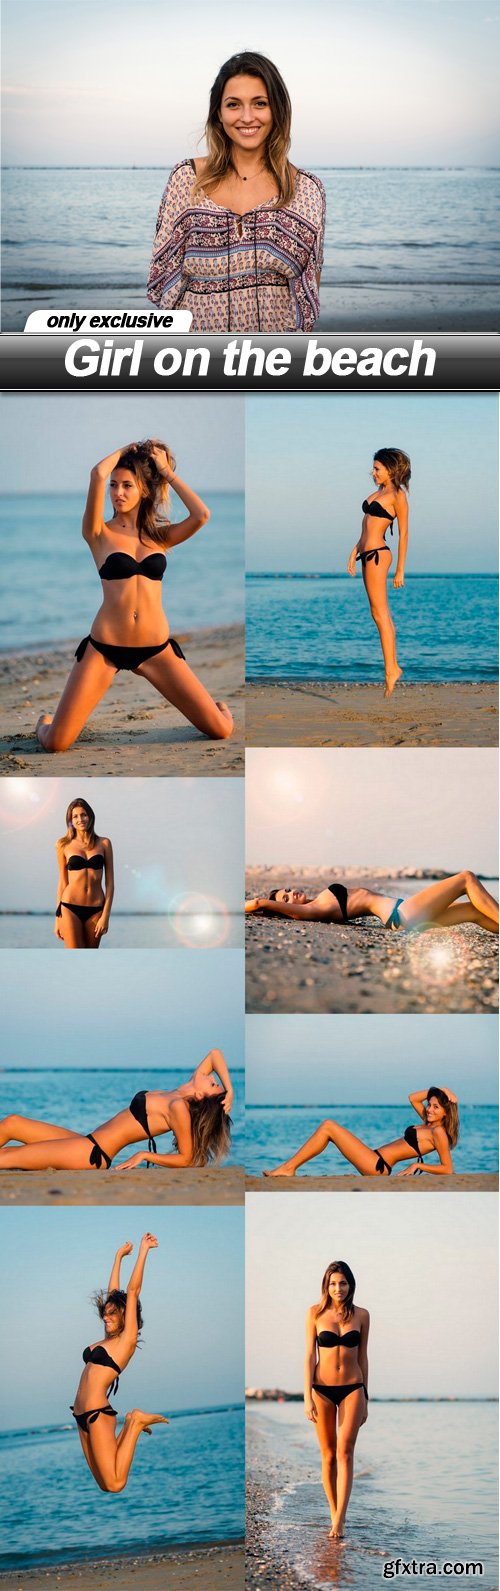 Girl on the beach - 9 UHQ JPEG